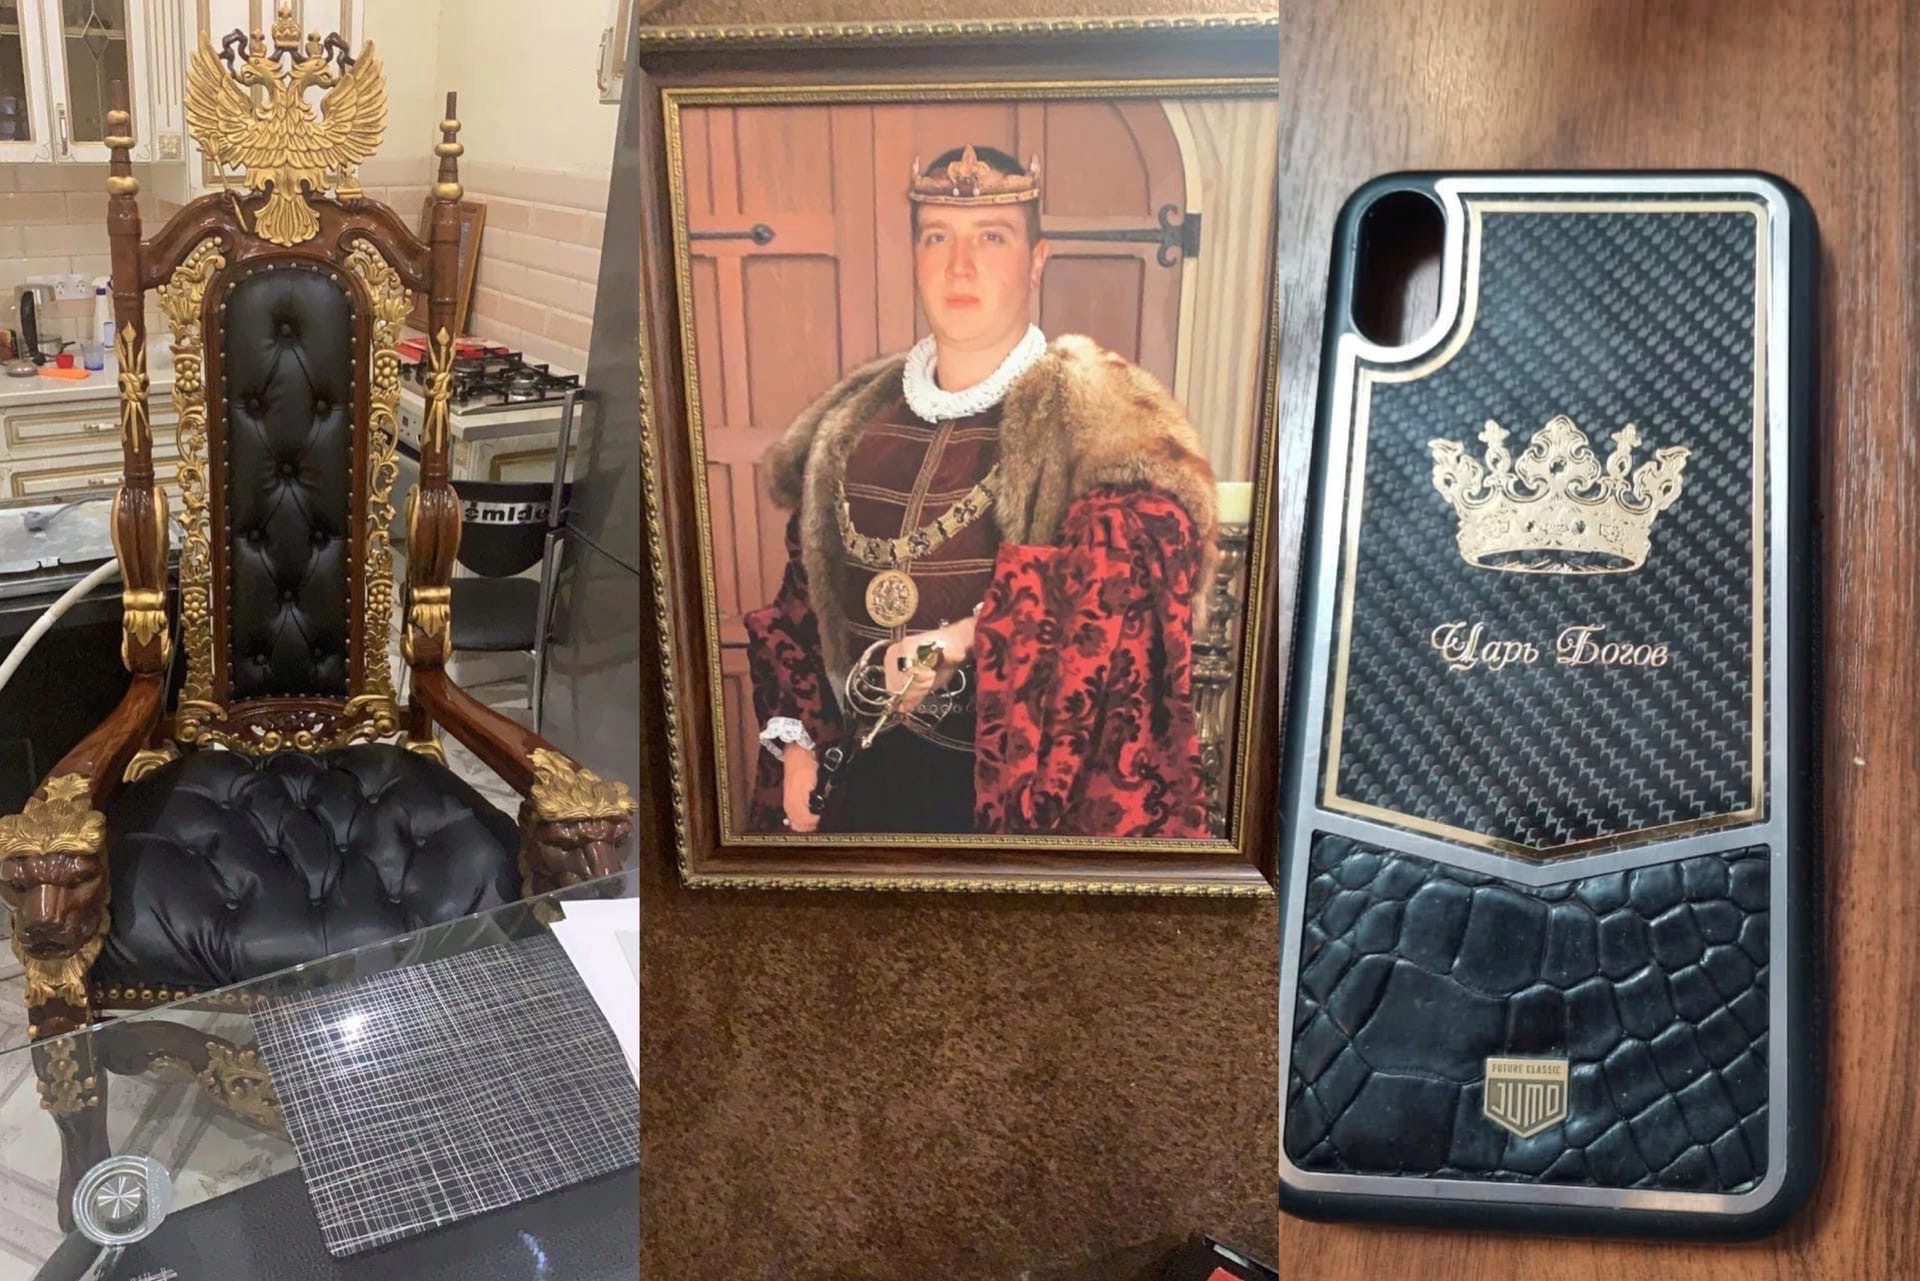 В Оренбурге полицейские арестовали лидера преступной группировки. Он называл себя «Царём Богов», а в его доме нашли позолоченный трон, портрет с короной и золотые украшения. Excjtt10